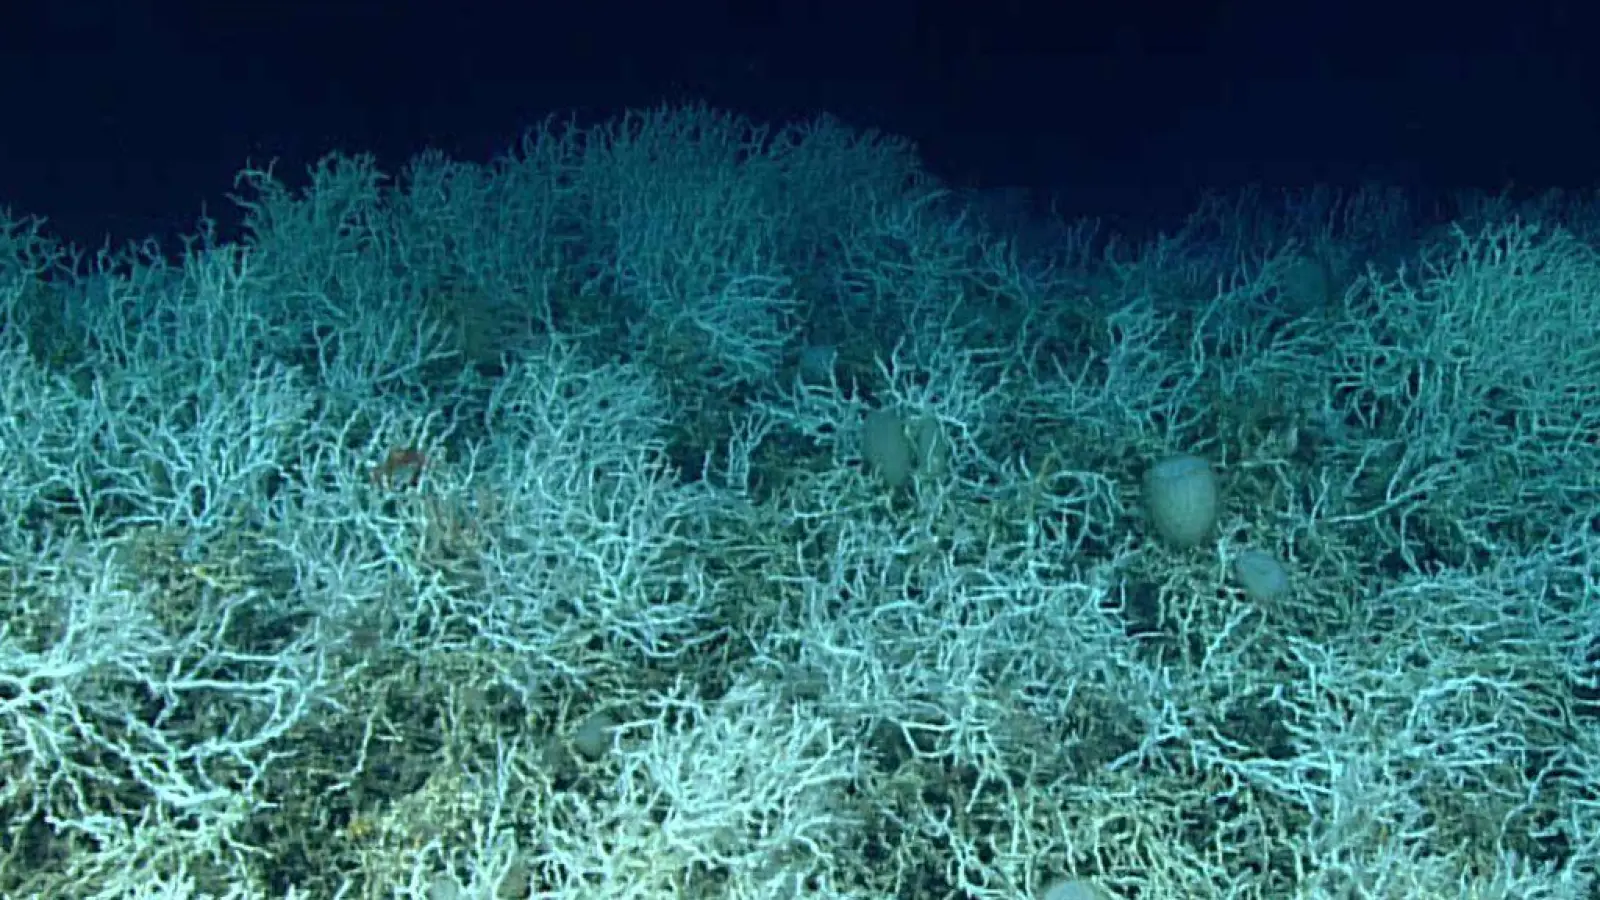 Dichte Felder von Lophelia pertusa, einer riffbildenden Koralle, sind auf den Hügeln des Blake-Plateaus zu finden. (Foto: NOAA Ocean Exploration, Windows to the Deep 2019/dpa)